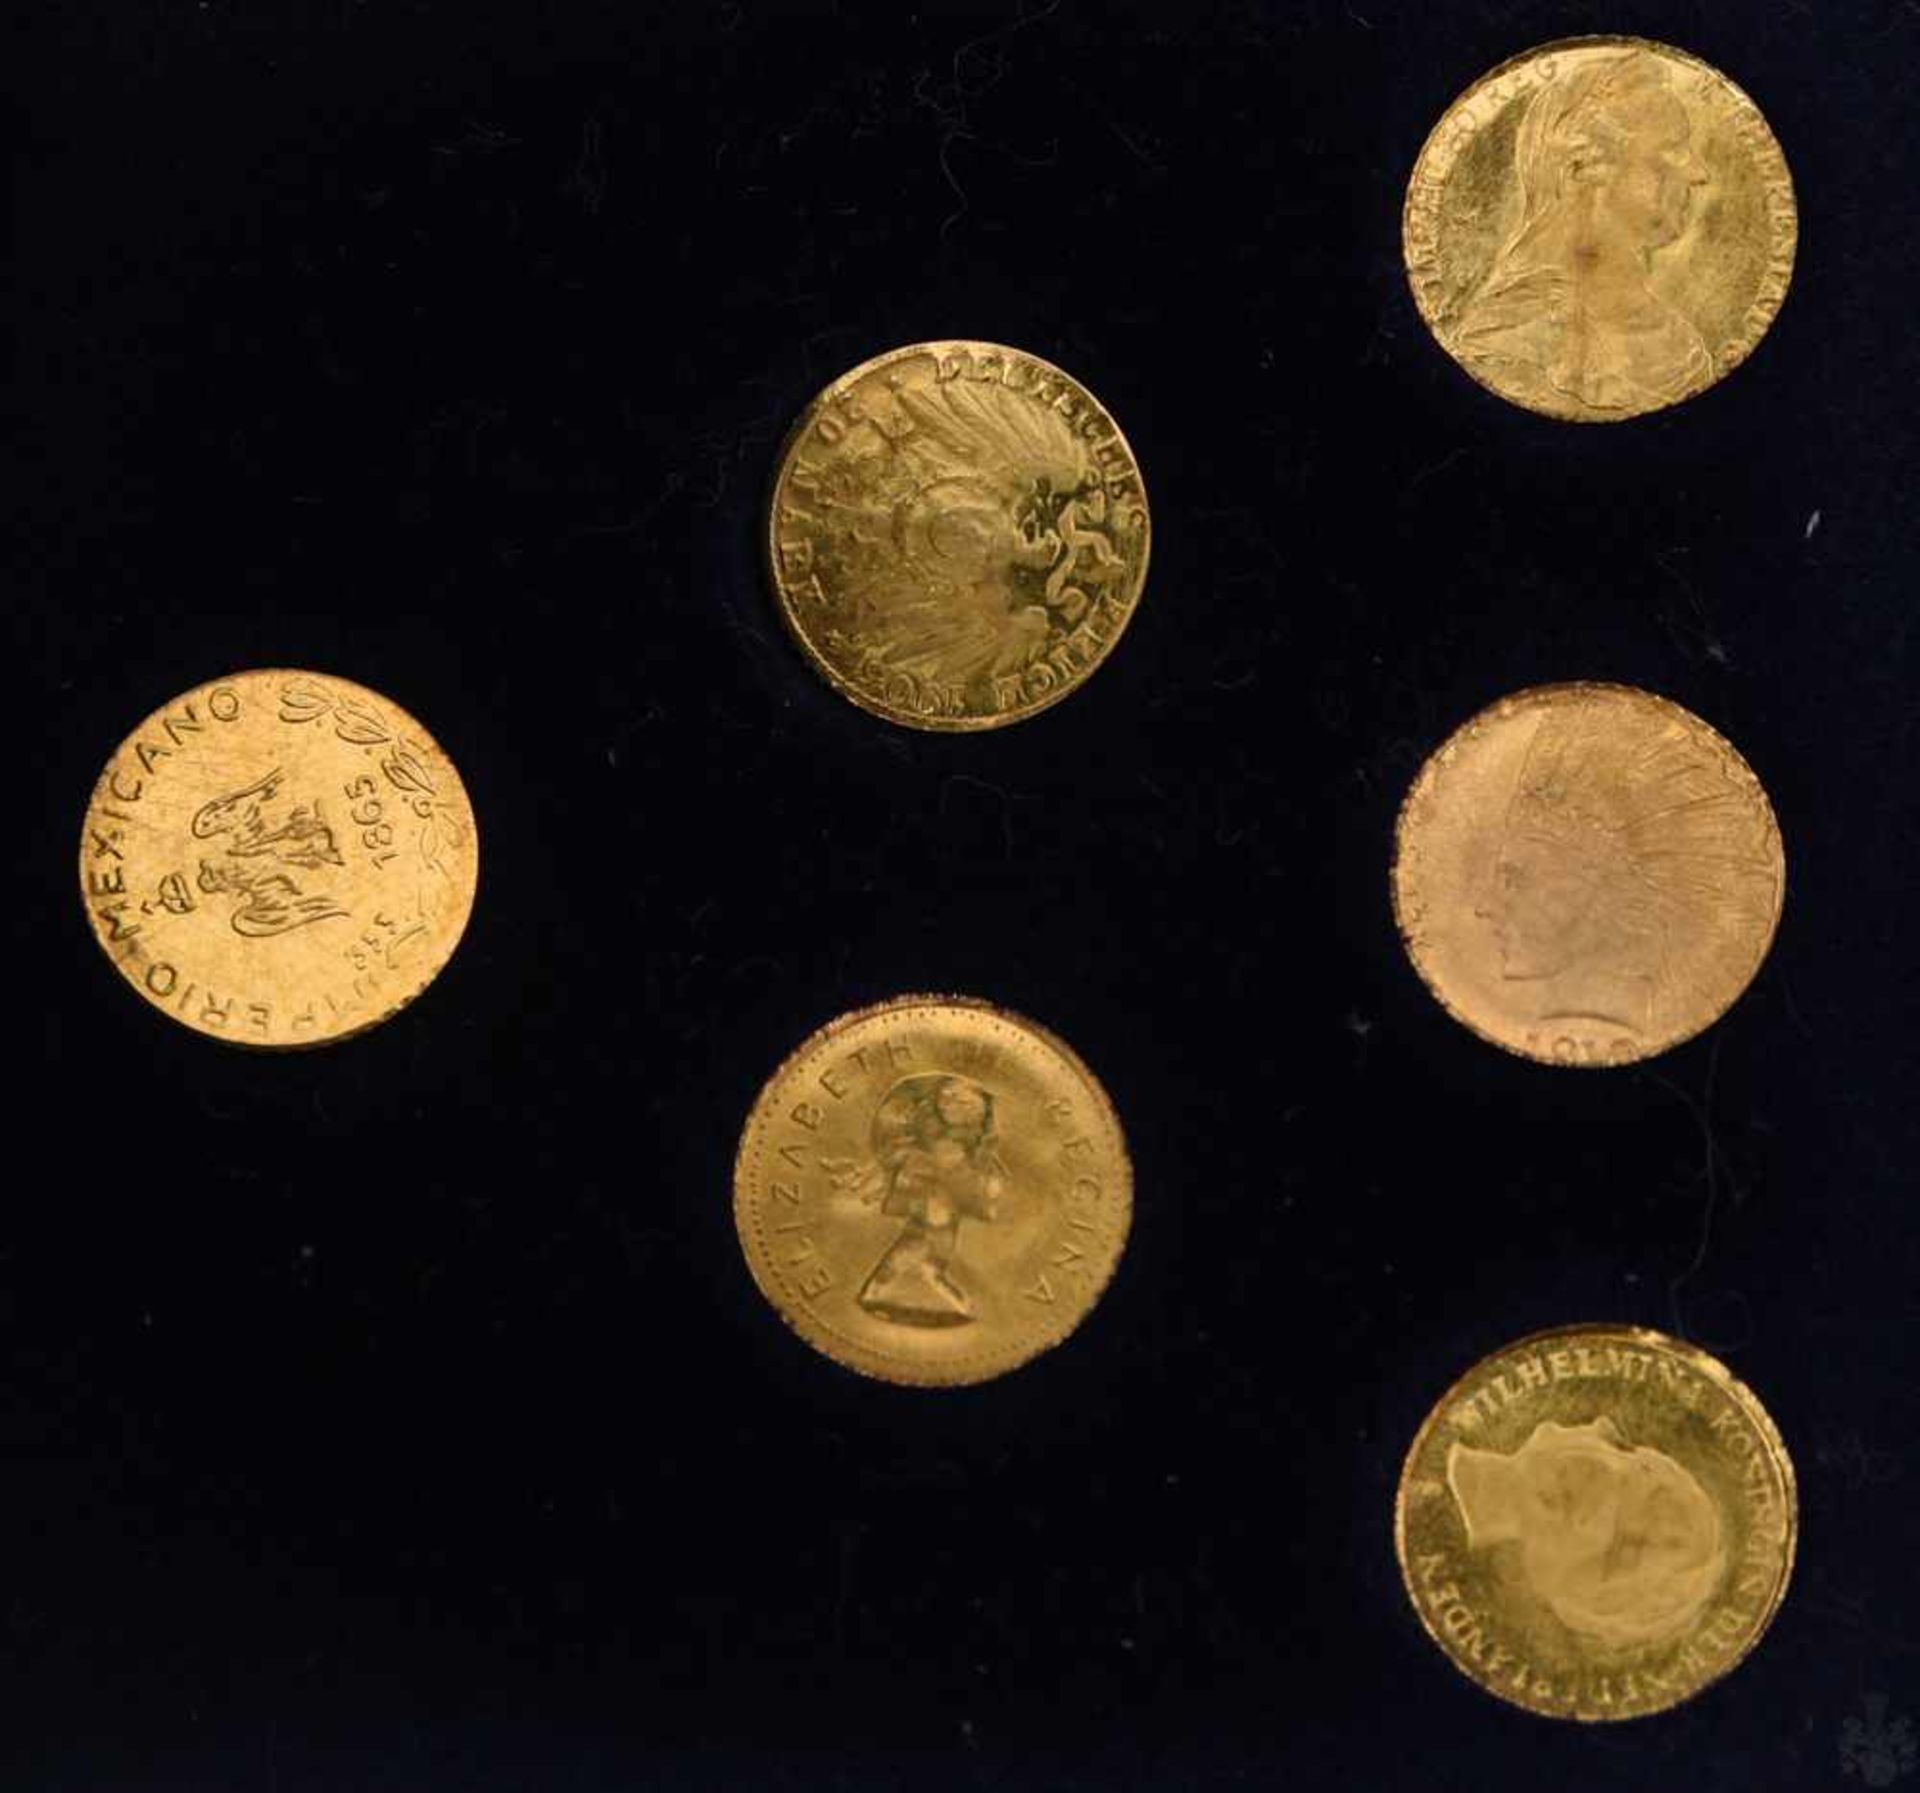 MÜNZANHÄNGER, Die kleinsten Goldmünzen der Welt, mit 14 Karat Kette, 20. Jhd. (13)1x Münzanhänger - Bild 6 aus 6